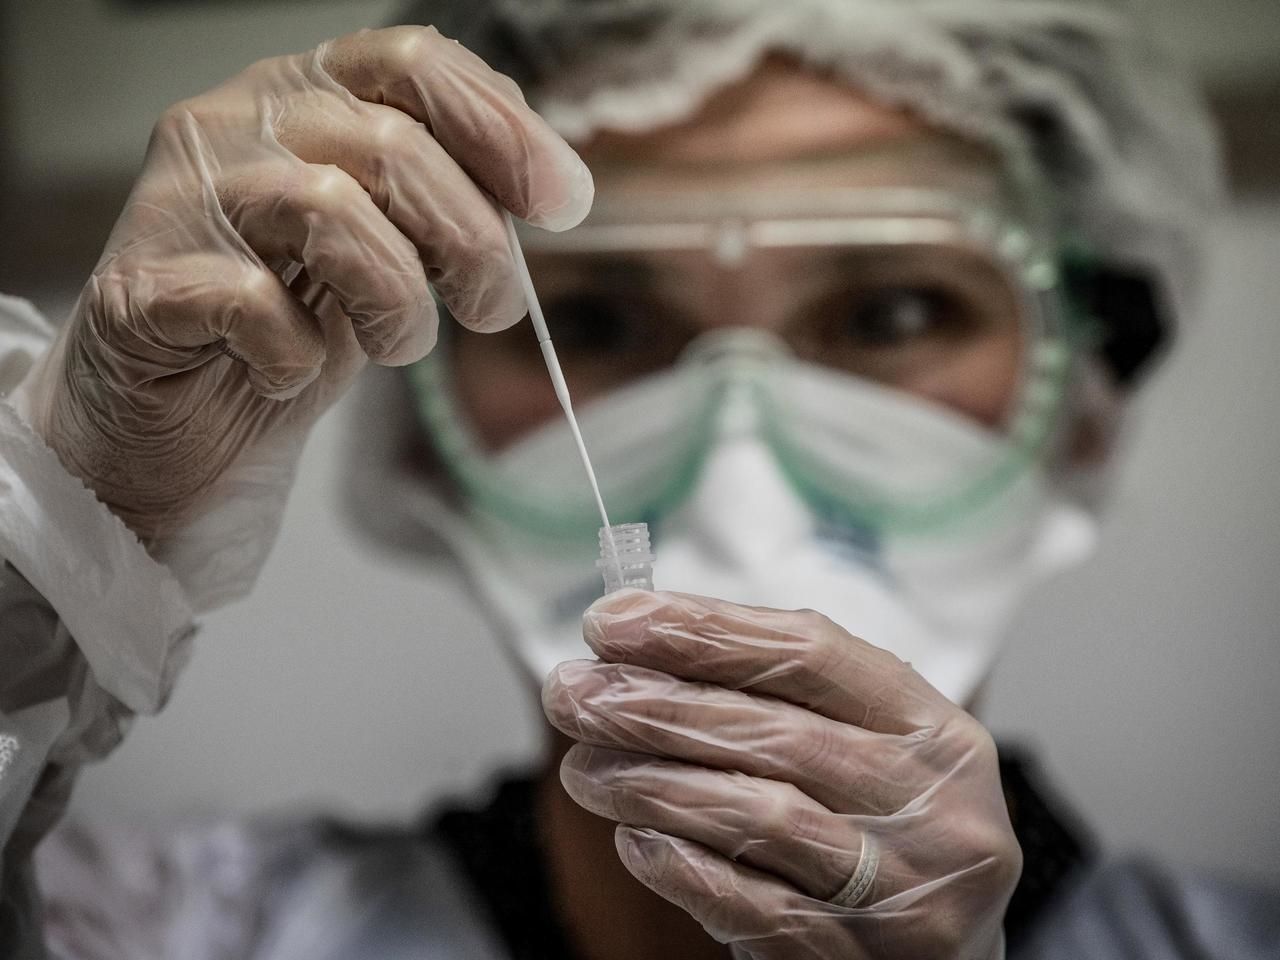 Gobierno firmó acuerdo con Sinovac para la producción de vacunas en Colombia